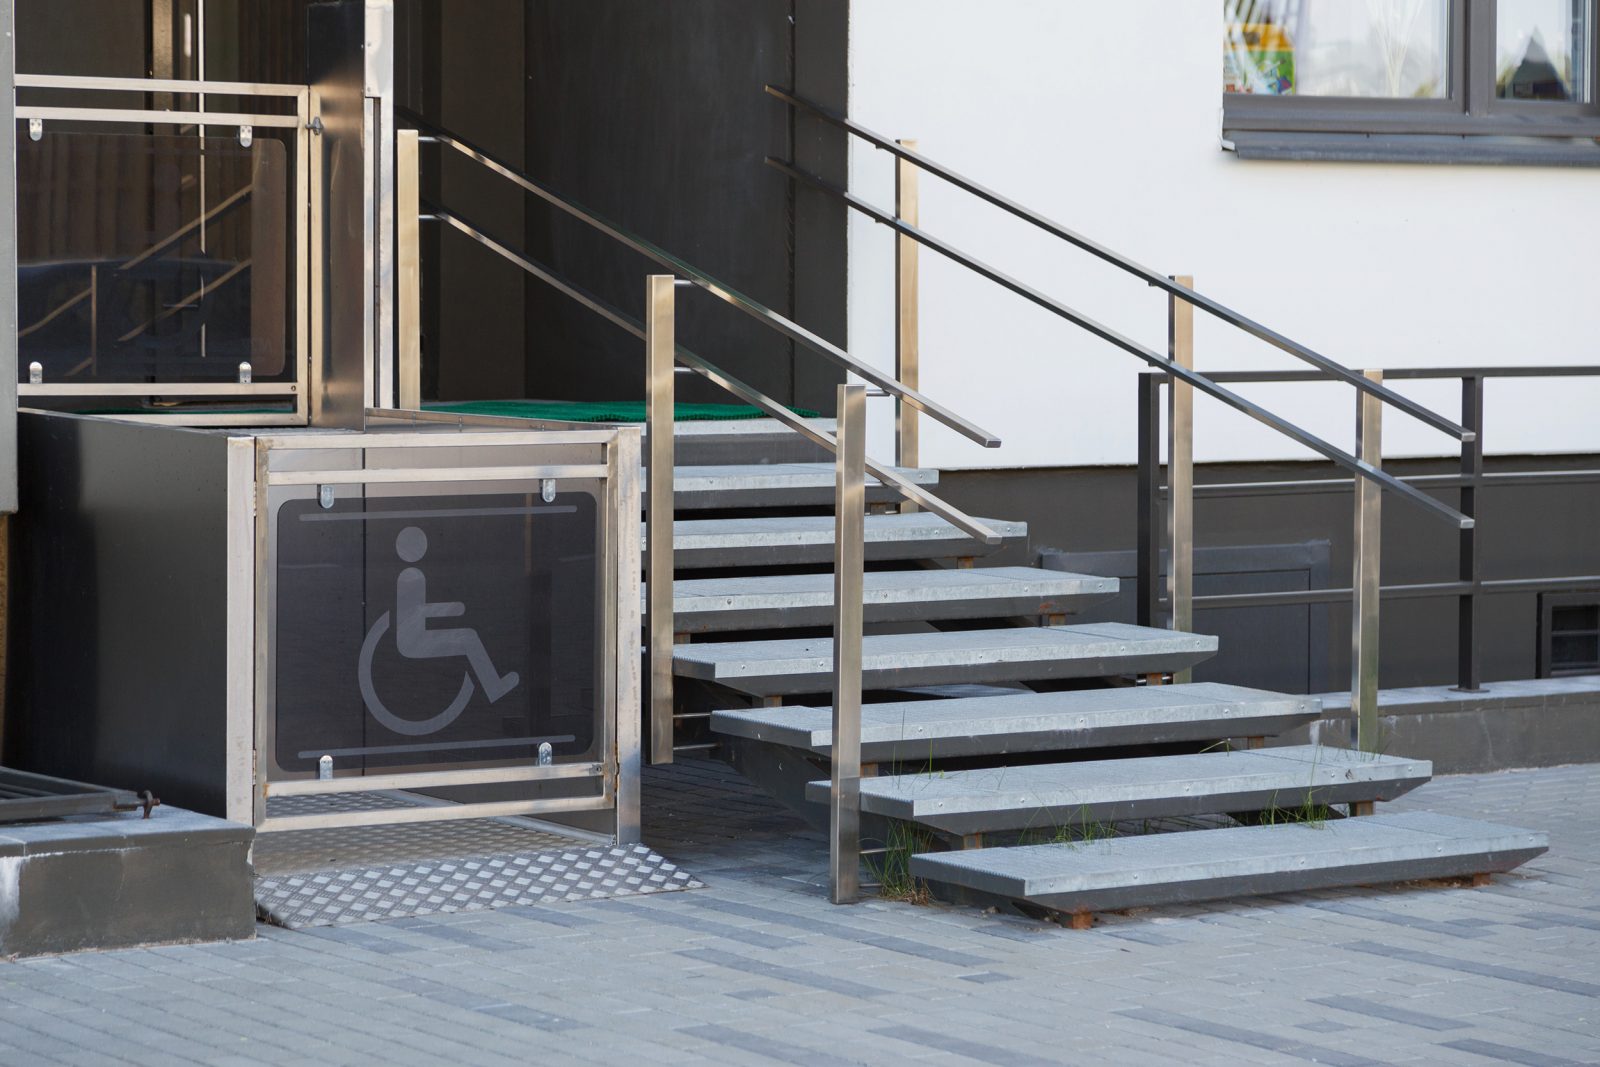 L’Association de personnes handicapées réclame plus d’accessibilité dans les endroits publics